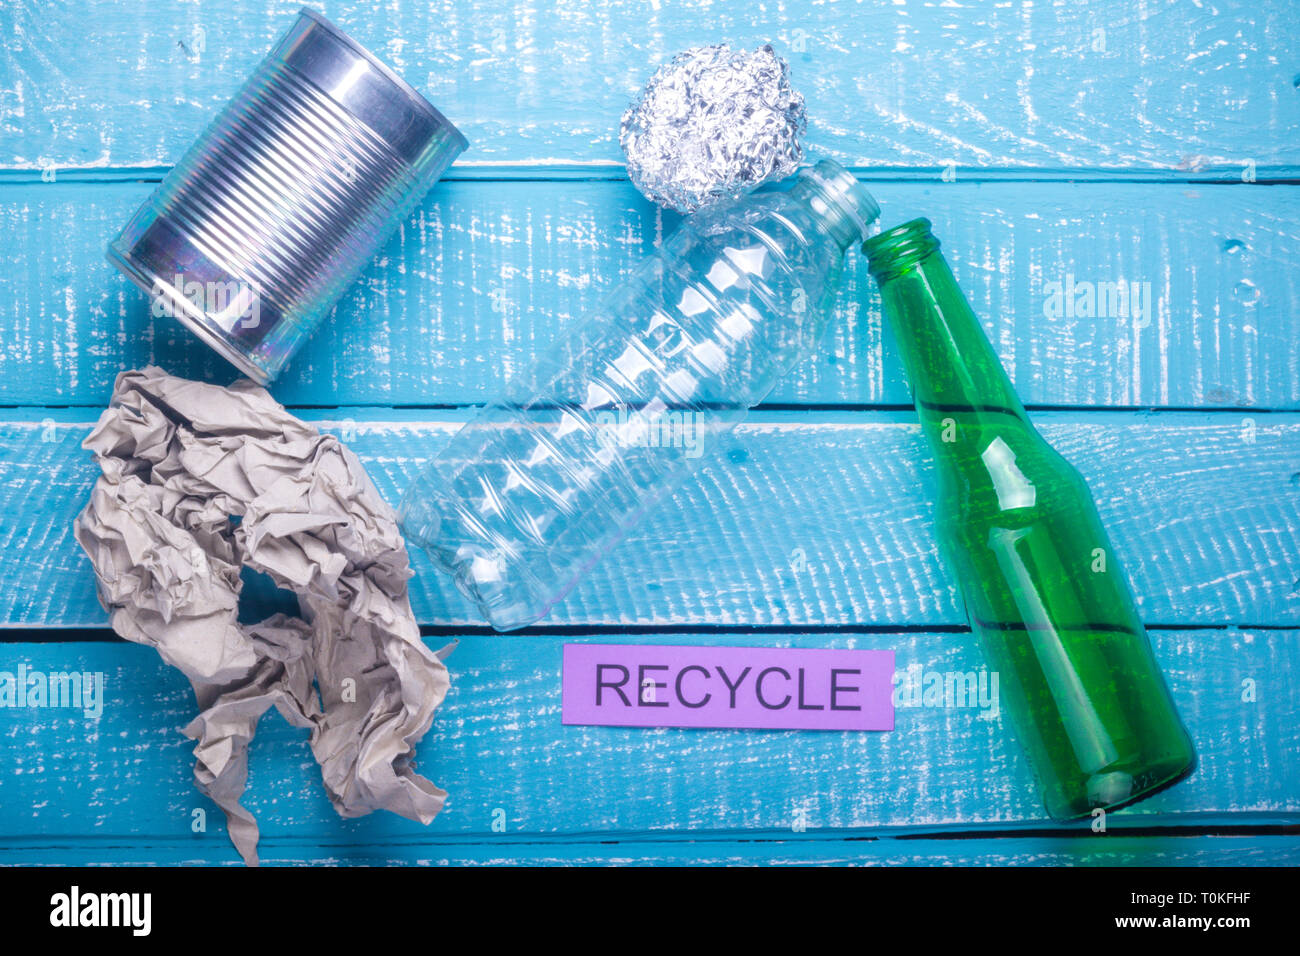 cine Ánimo Tomate Reciclar el concepto mostrando los productos de desecho de papel, vidrio,  plástico, papel de aluminio y reciclaje sobre un fondo azul desgastada  Fotografía de stock - Alamy